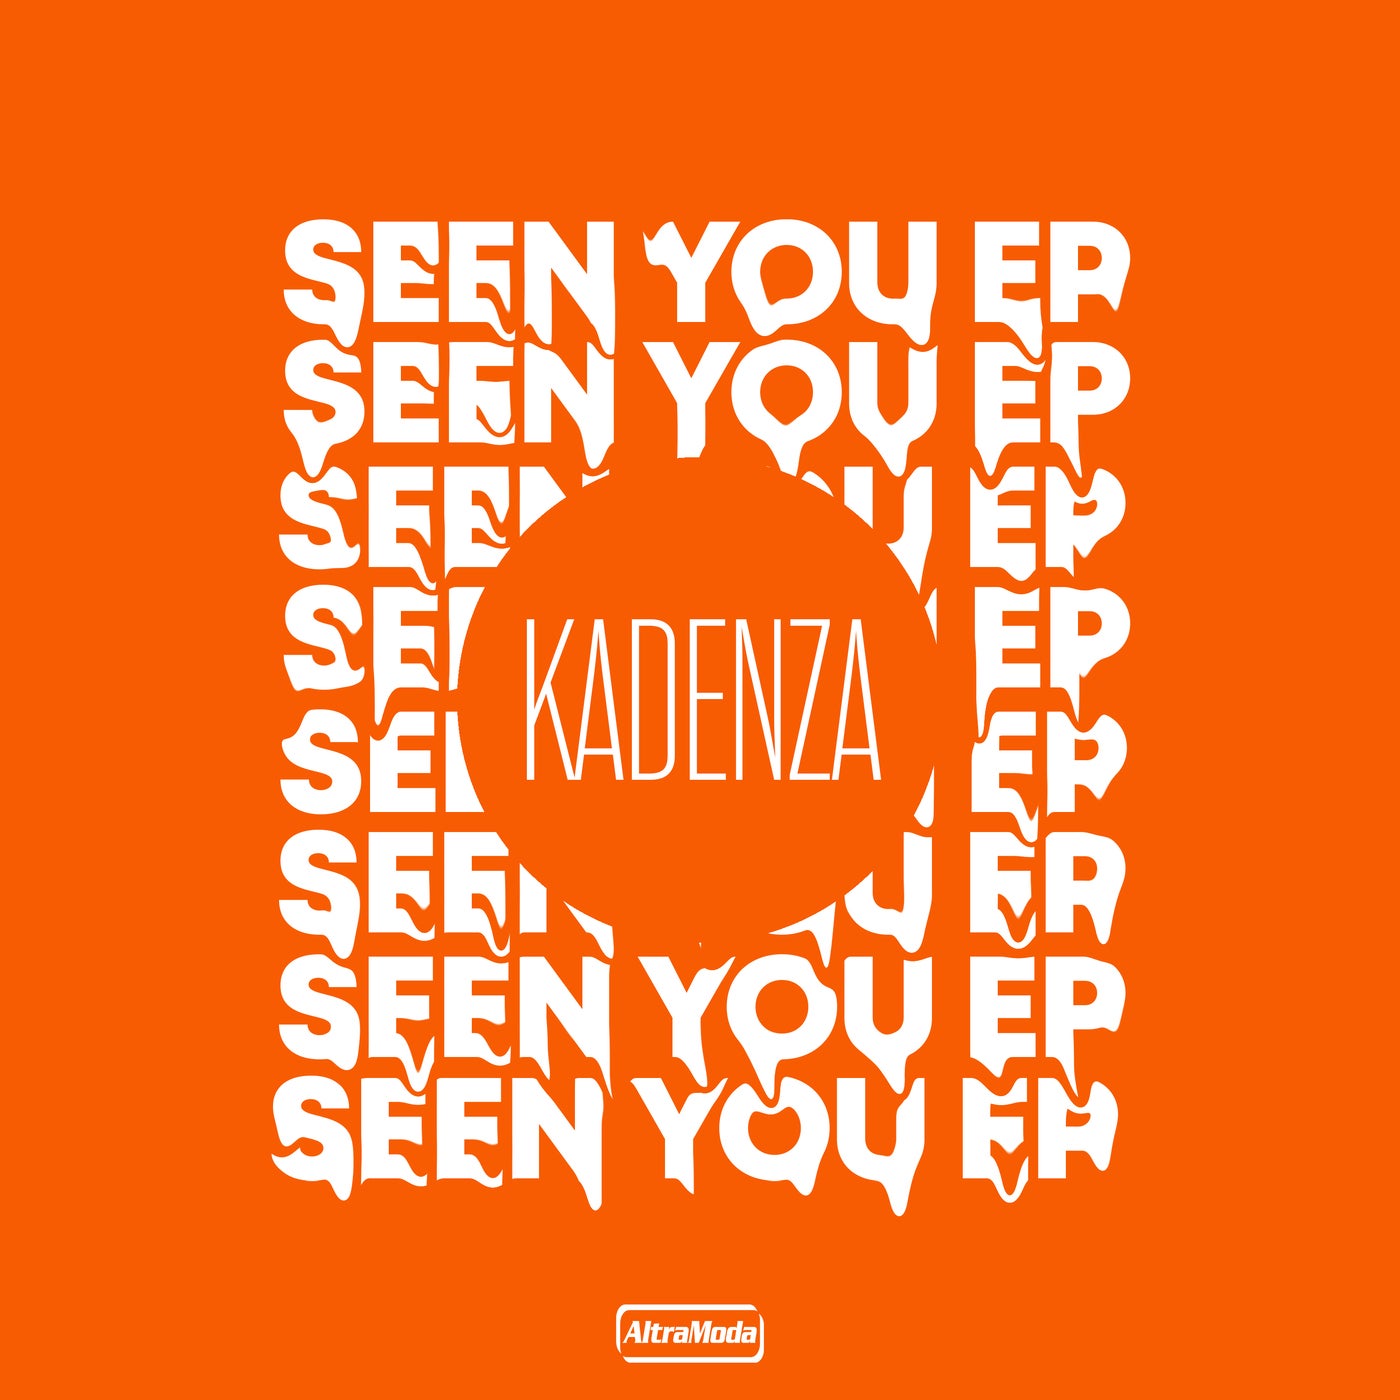 Kadenza – Indiana [LIT060]